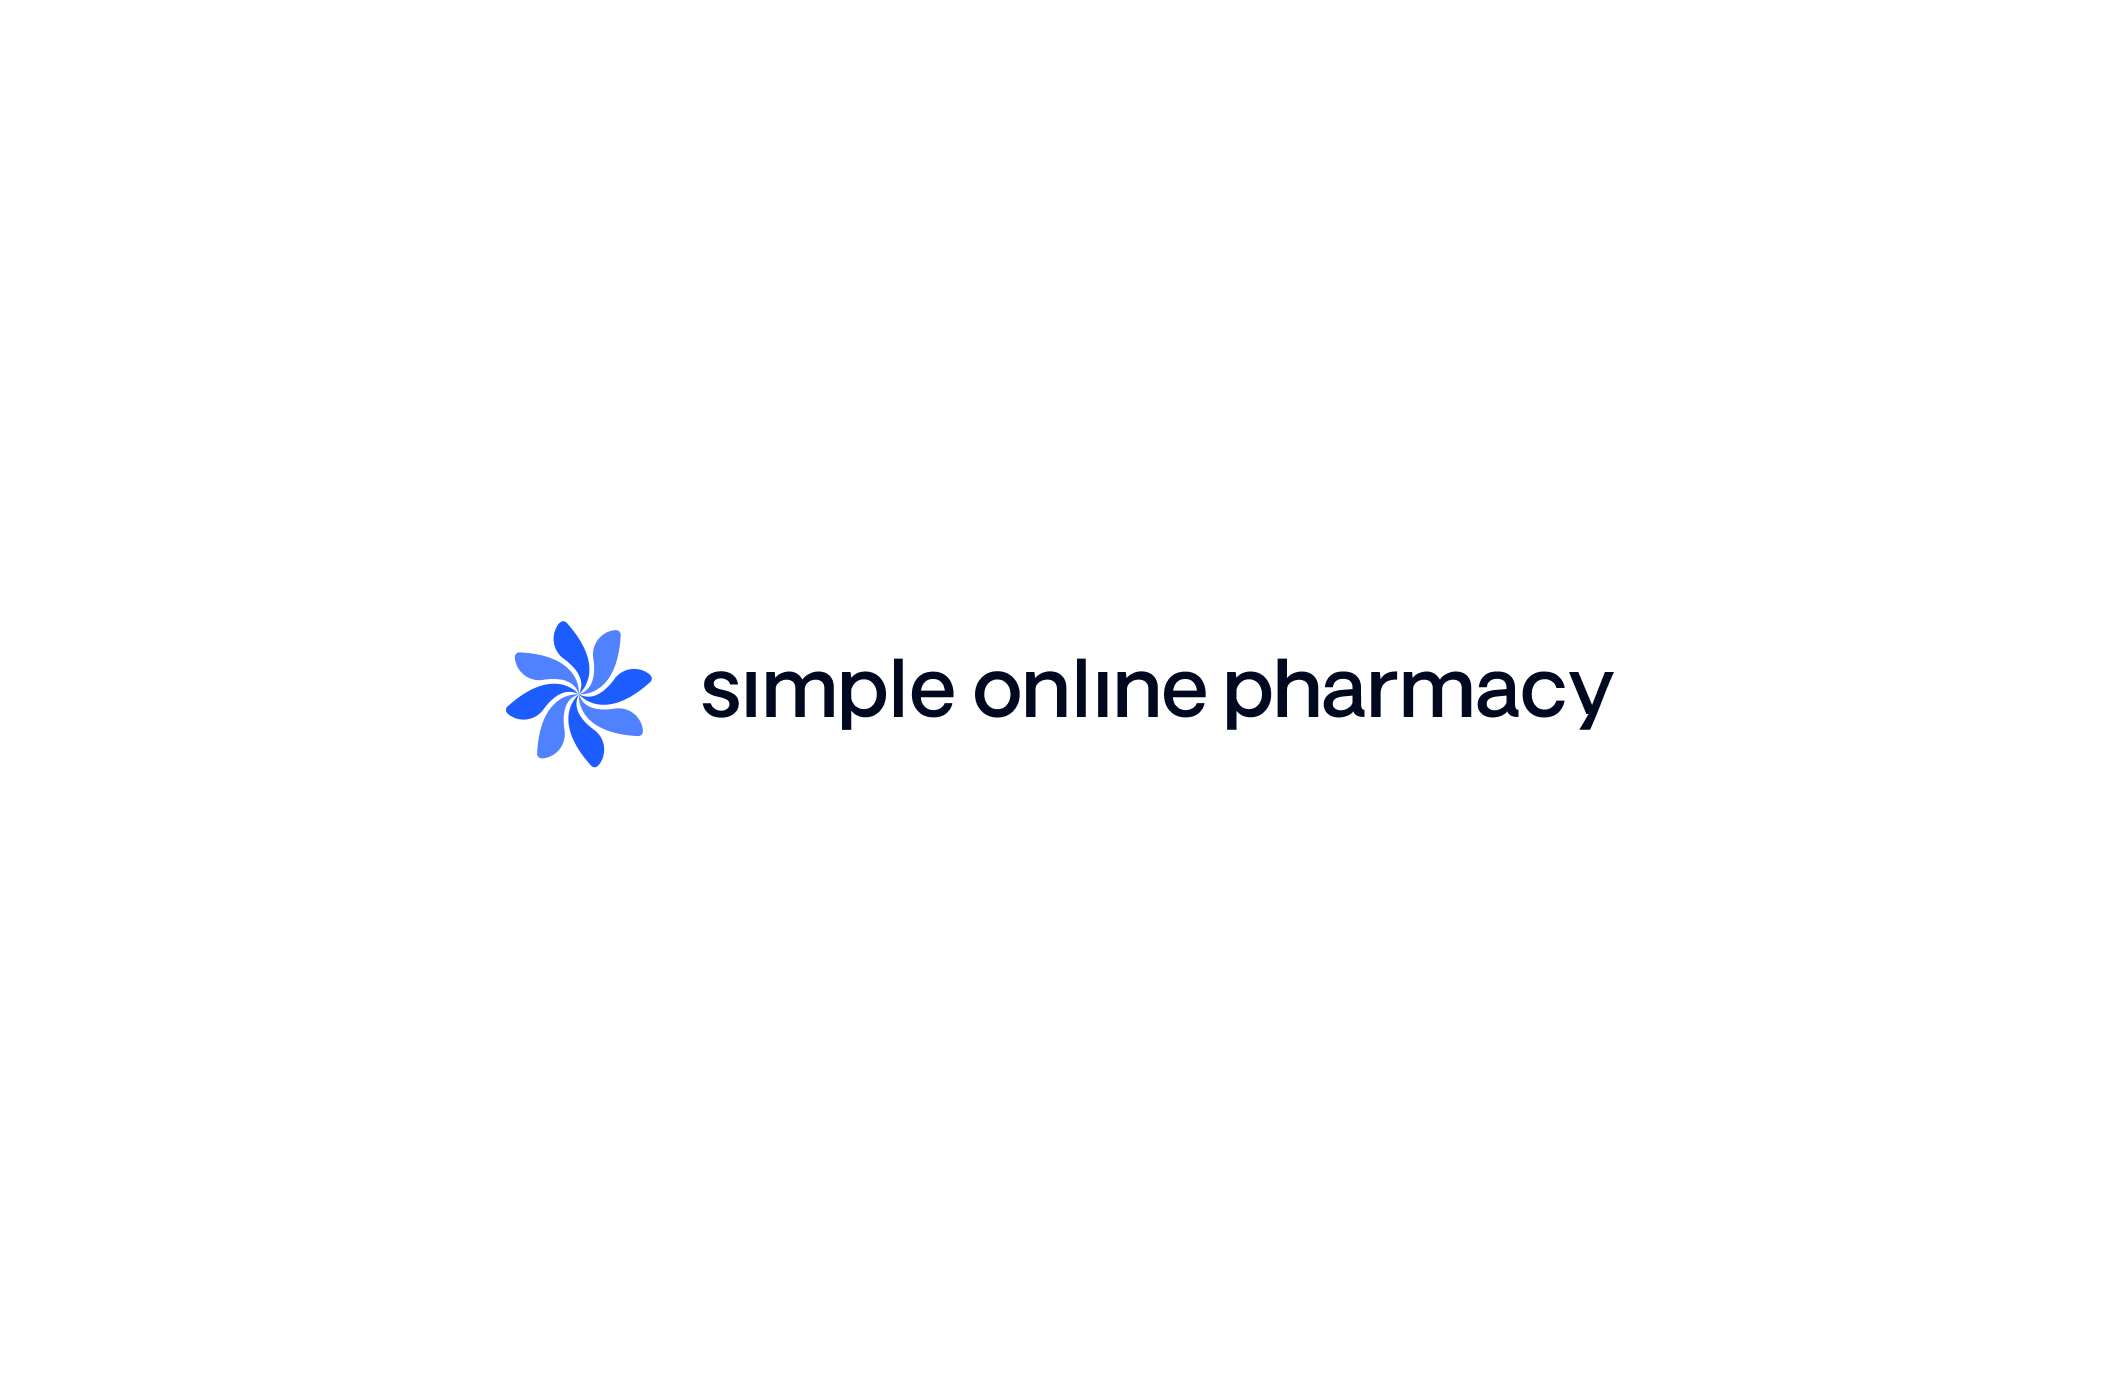 Simple Online Pharmacy Logo in Simple Blue